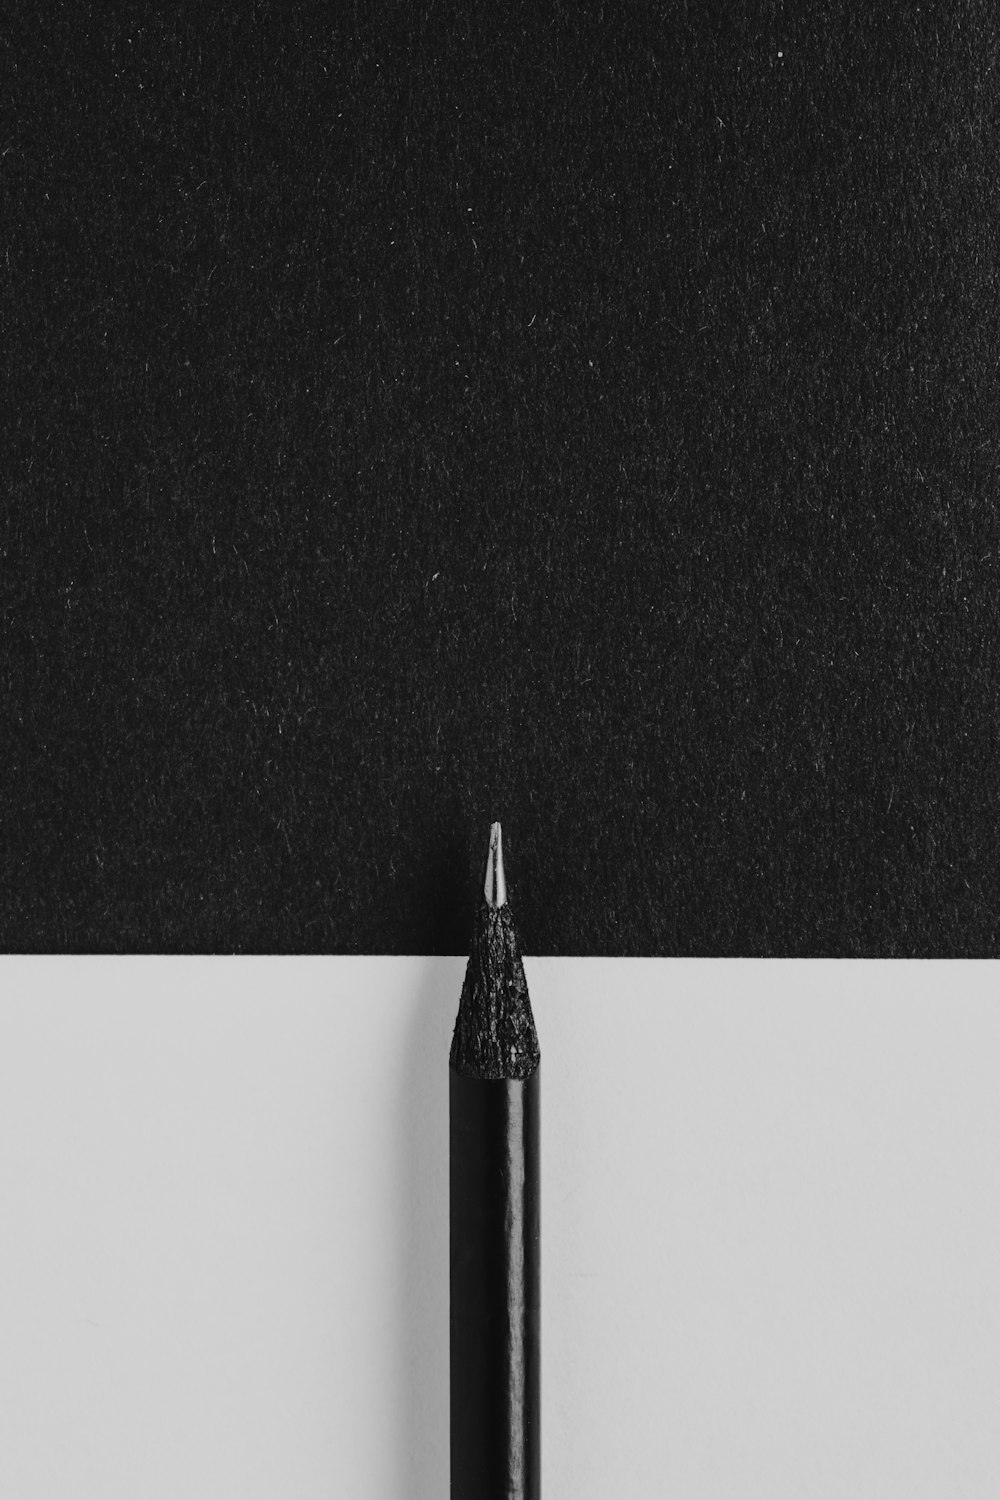 Ein schwarzer Stift, der auf einem Blatt Papier sitzt